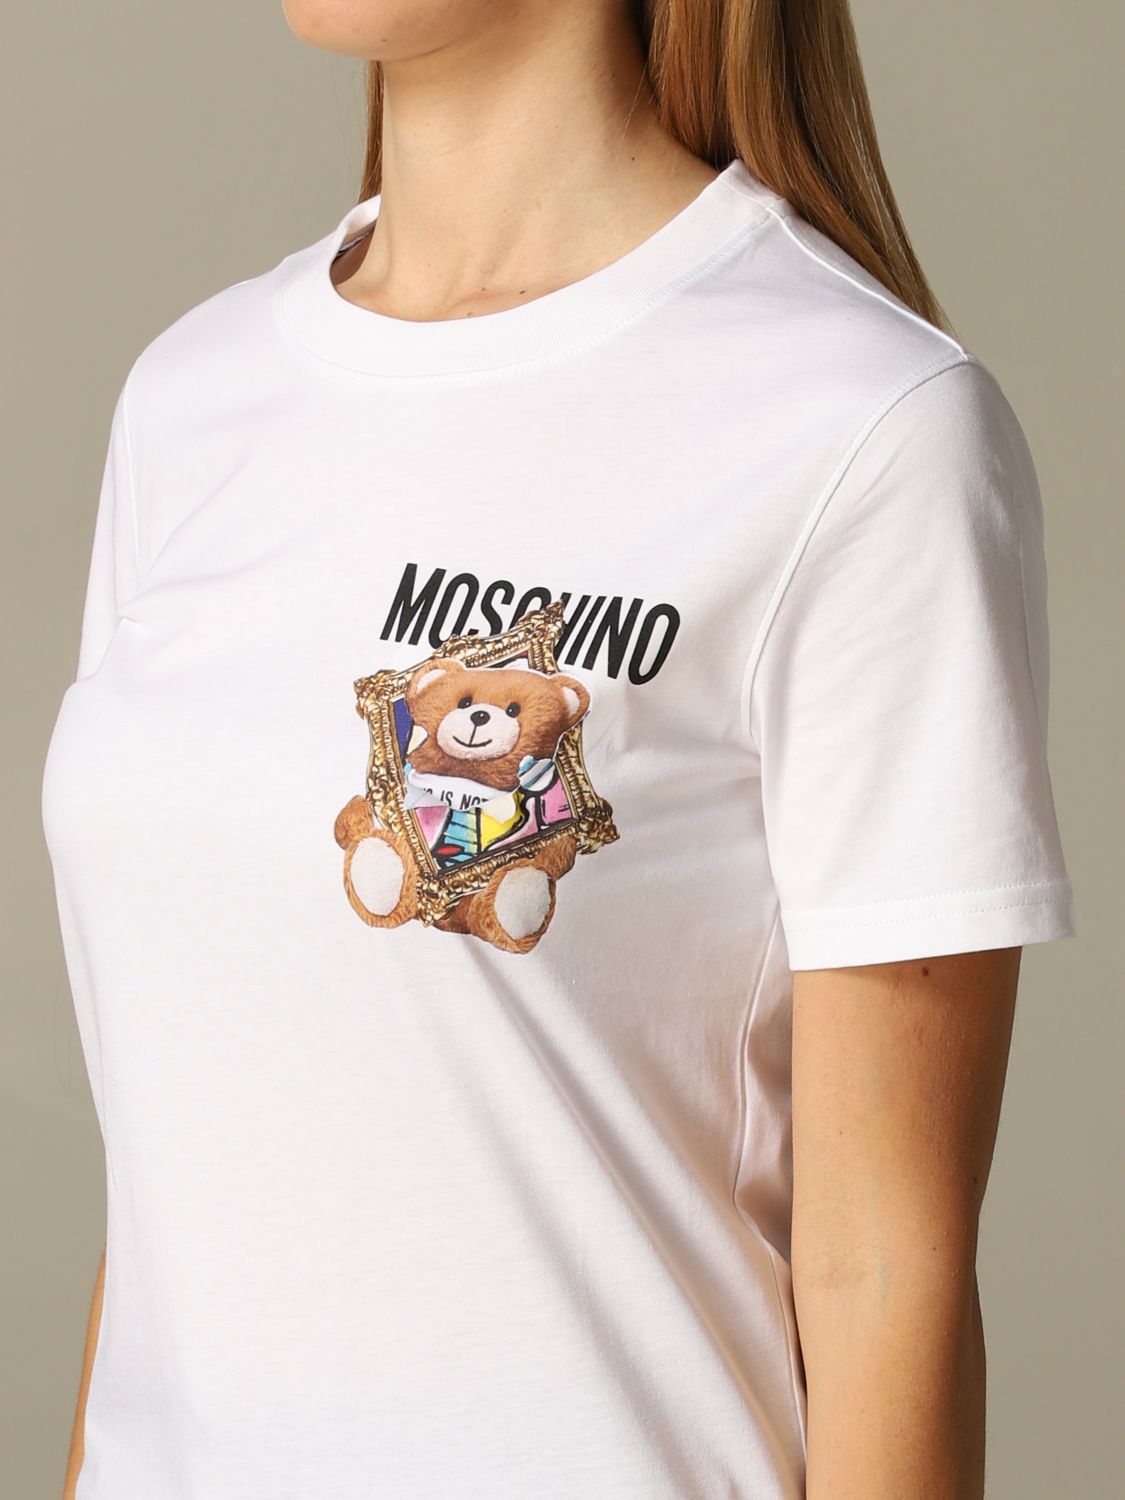 moschino shirt womens